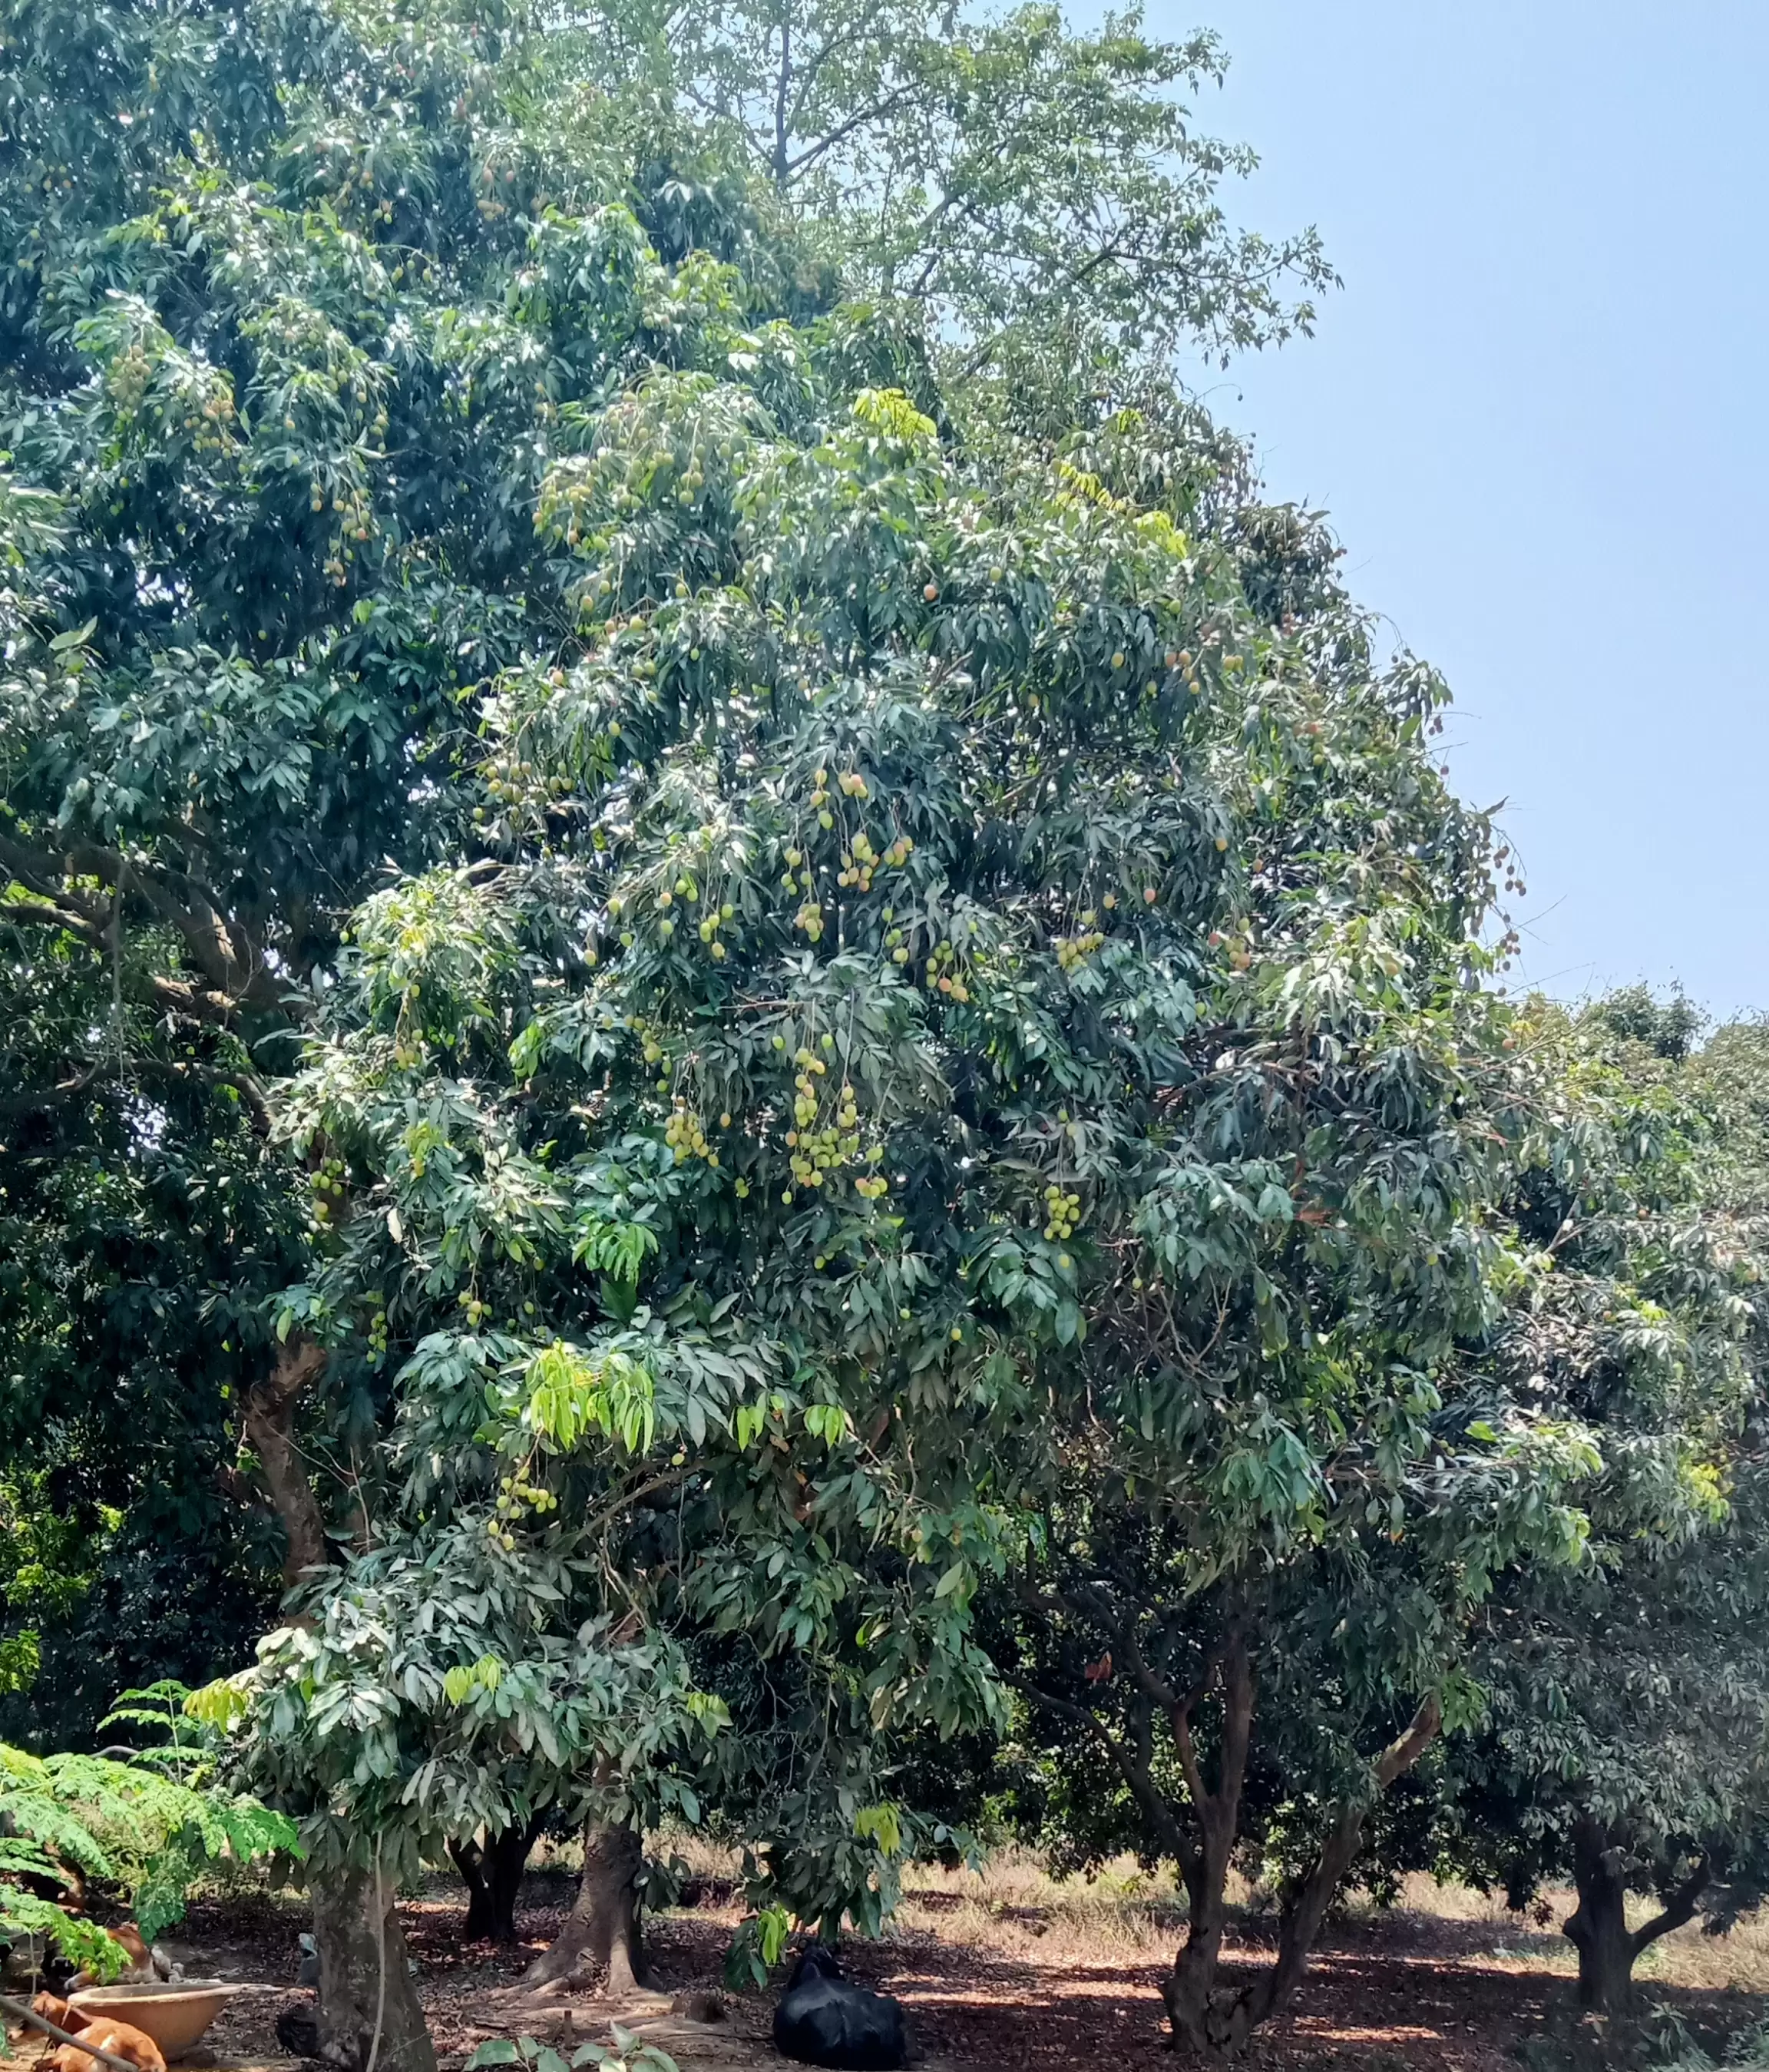 लीची के हब में पड़ी प्रकृति की मार, पेड़ पर कम लदे फल अब टूटकर हो रहे हैं बर्बाद